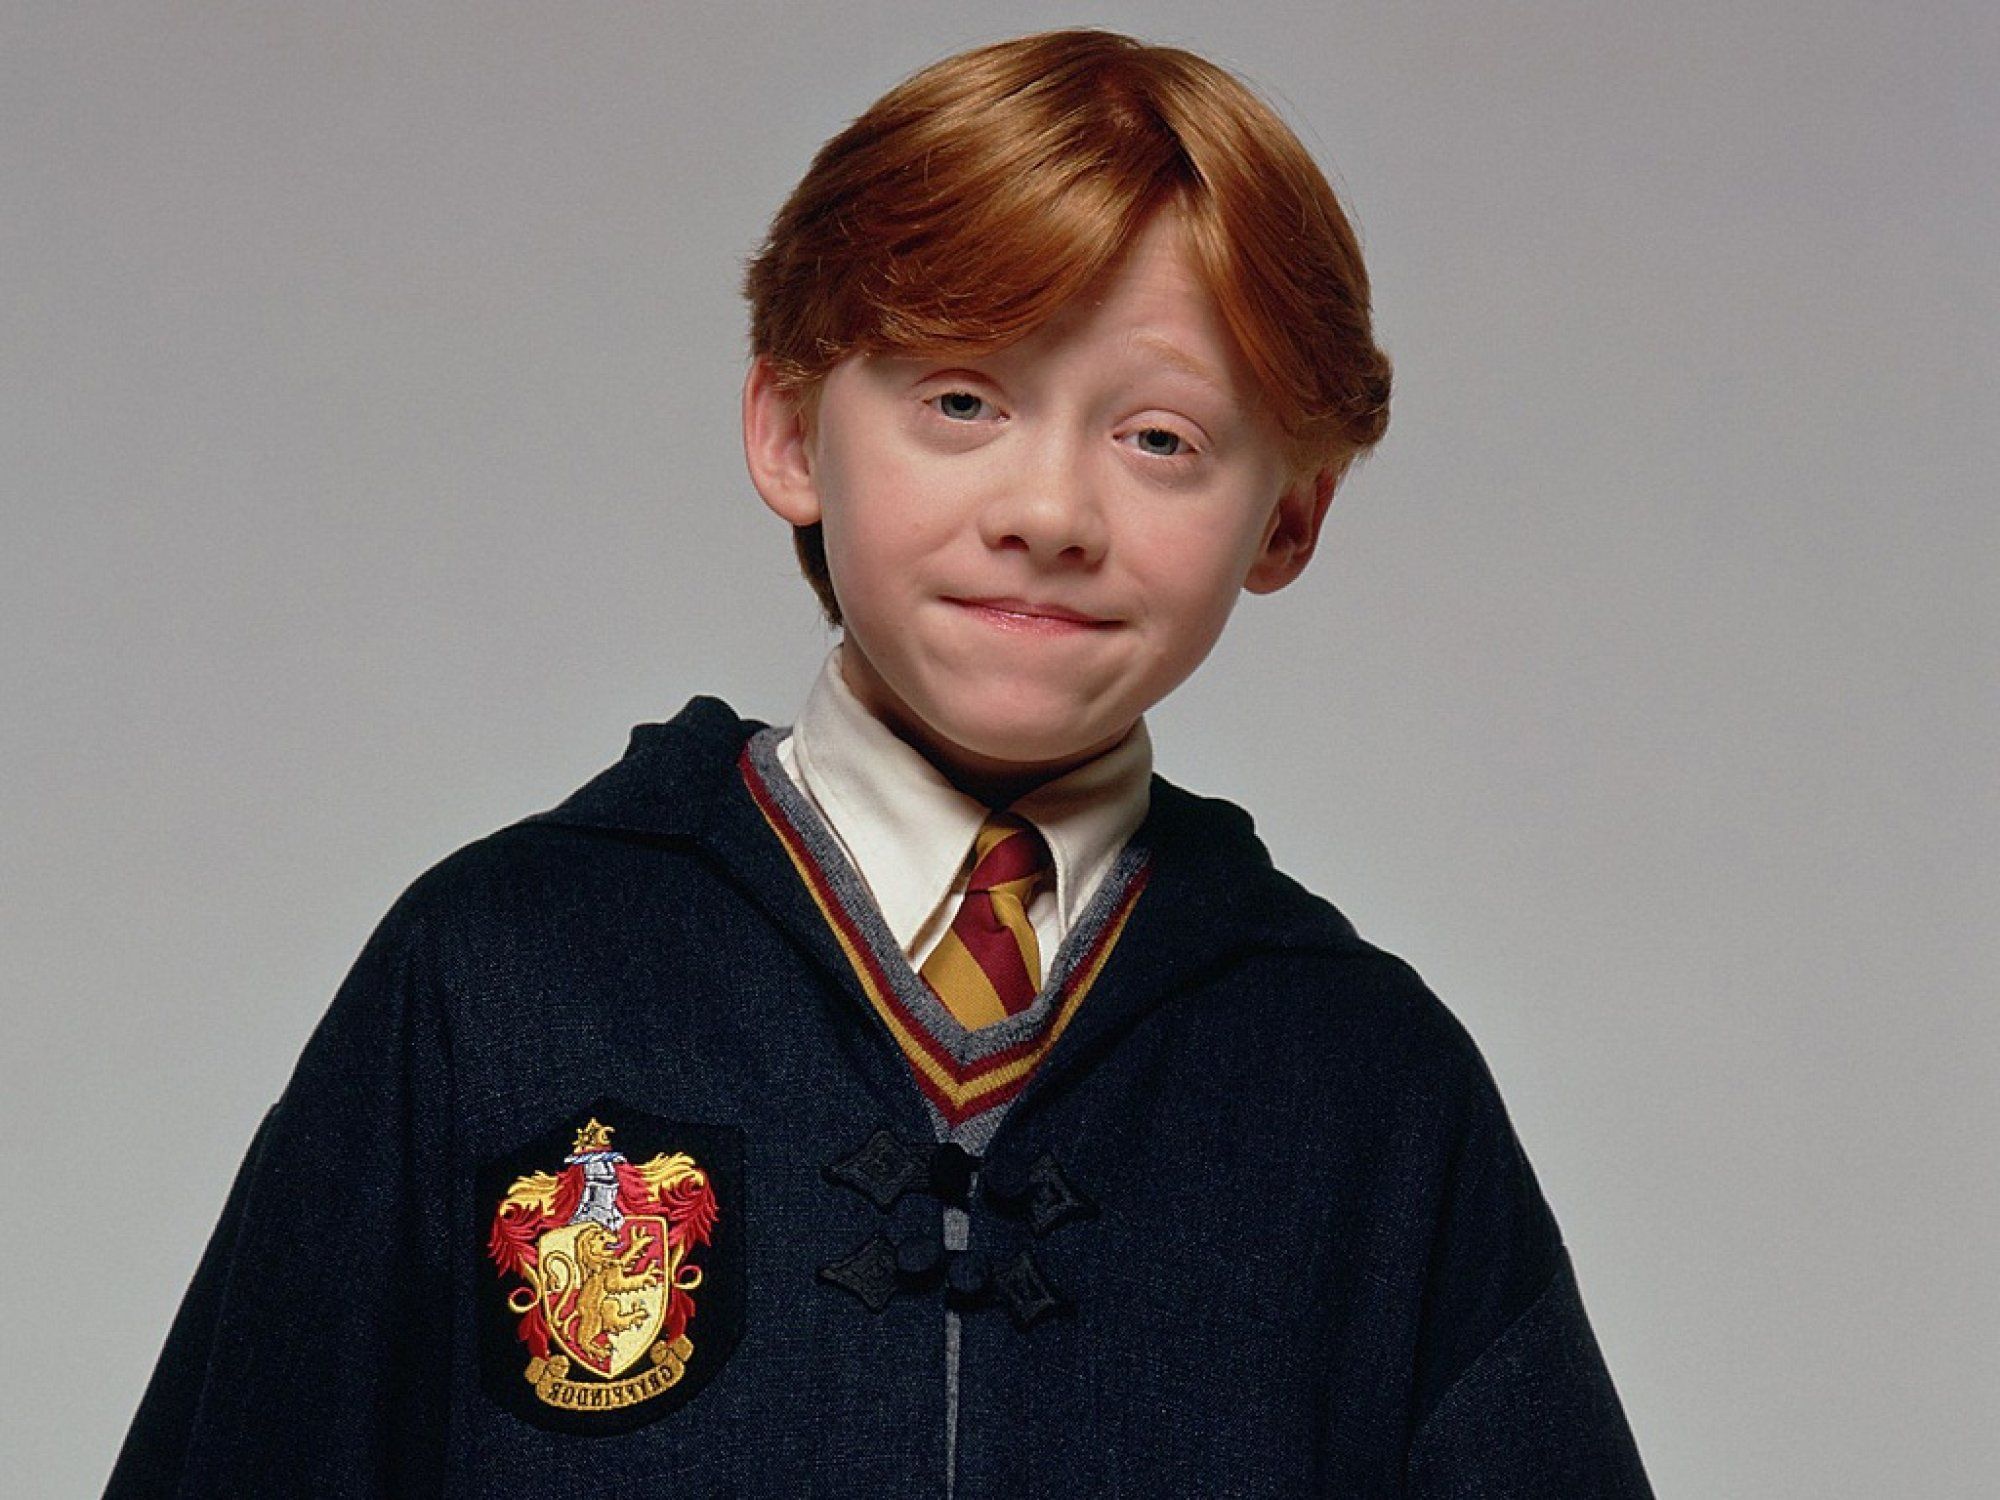 Harry Potter. Harry potter kids, Harry potter ron weasley, Weasley harry potter